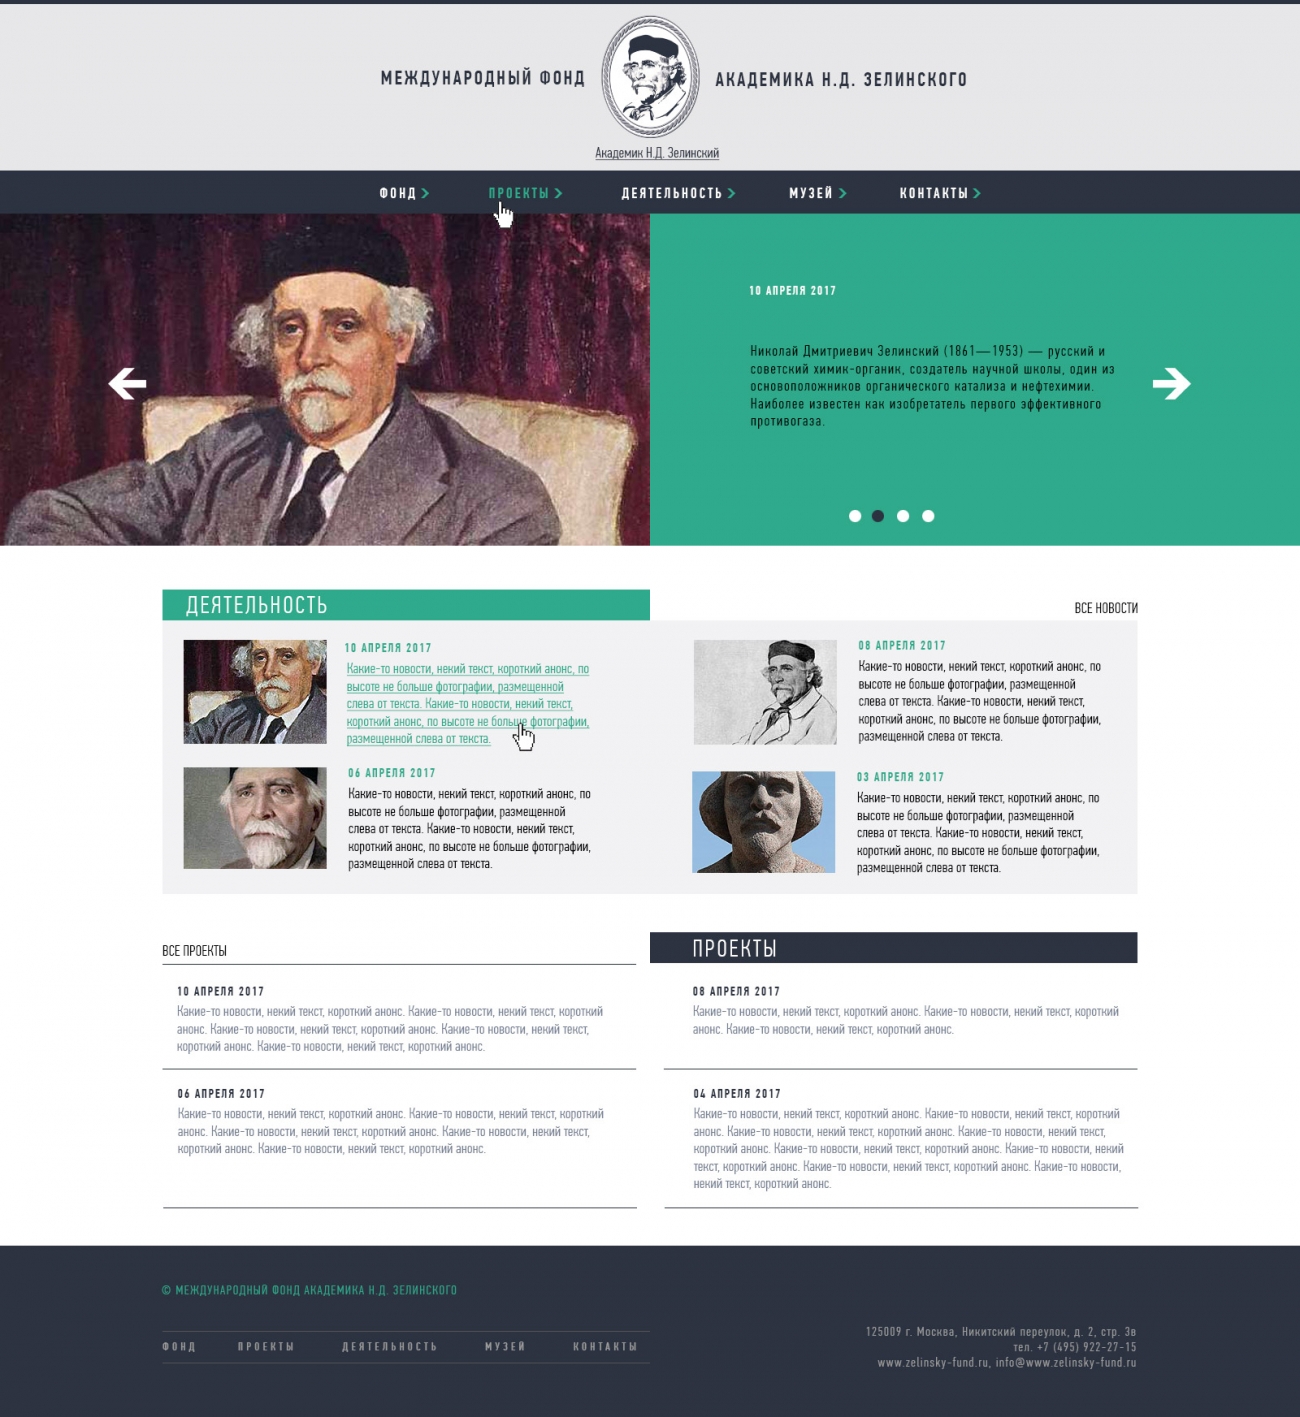 Макет номер 4 главной страницы сайта фонда академика Зелинского